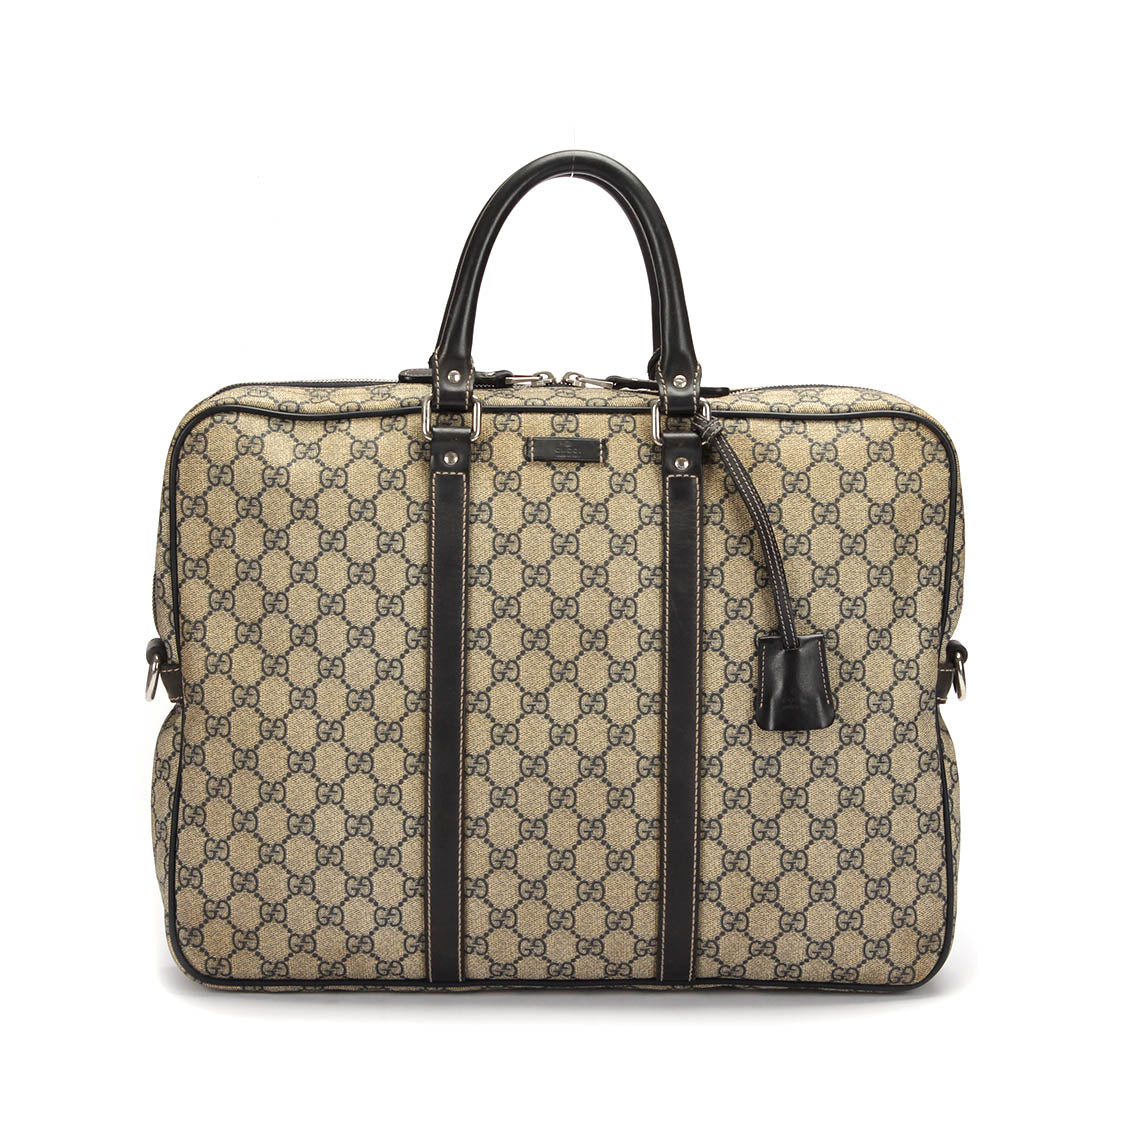 Gucci  Canvas Handbag in Good condition